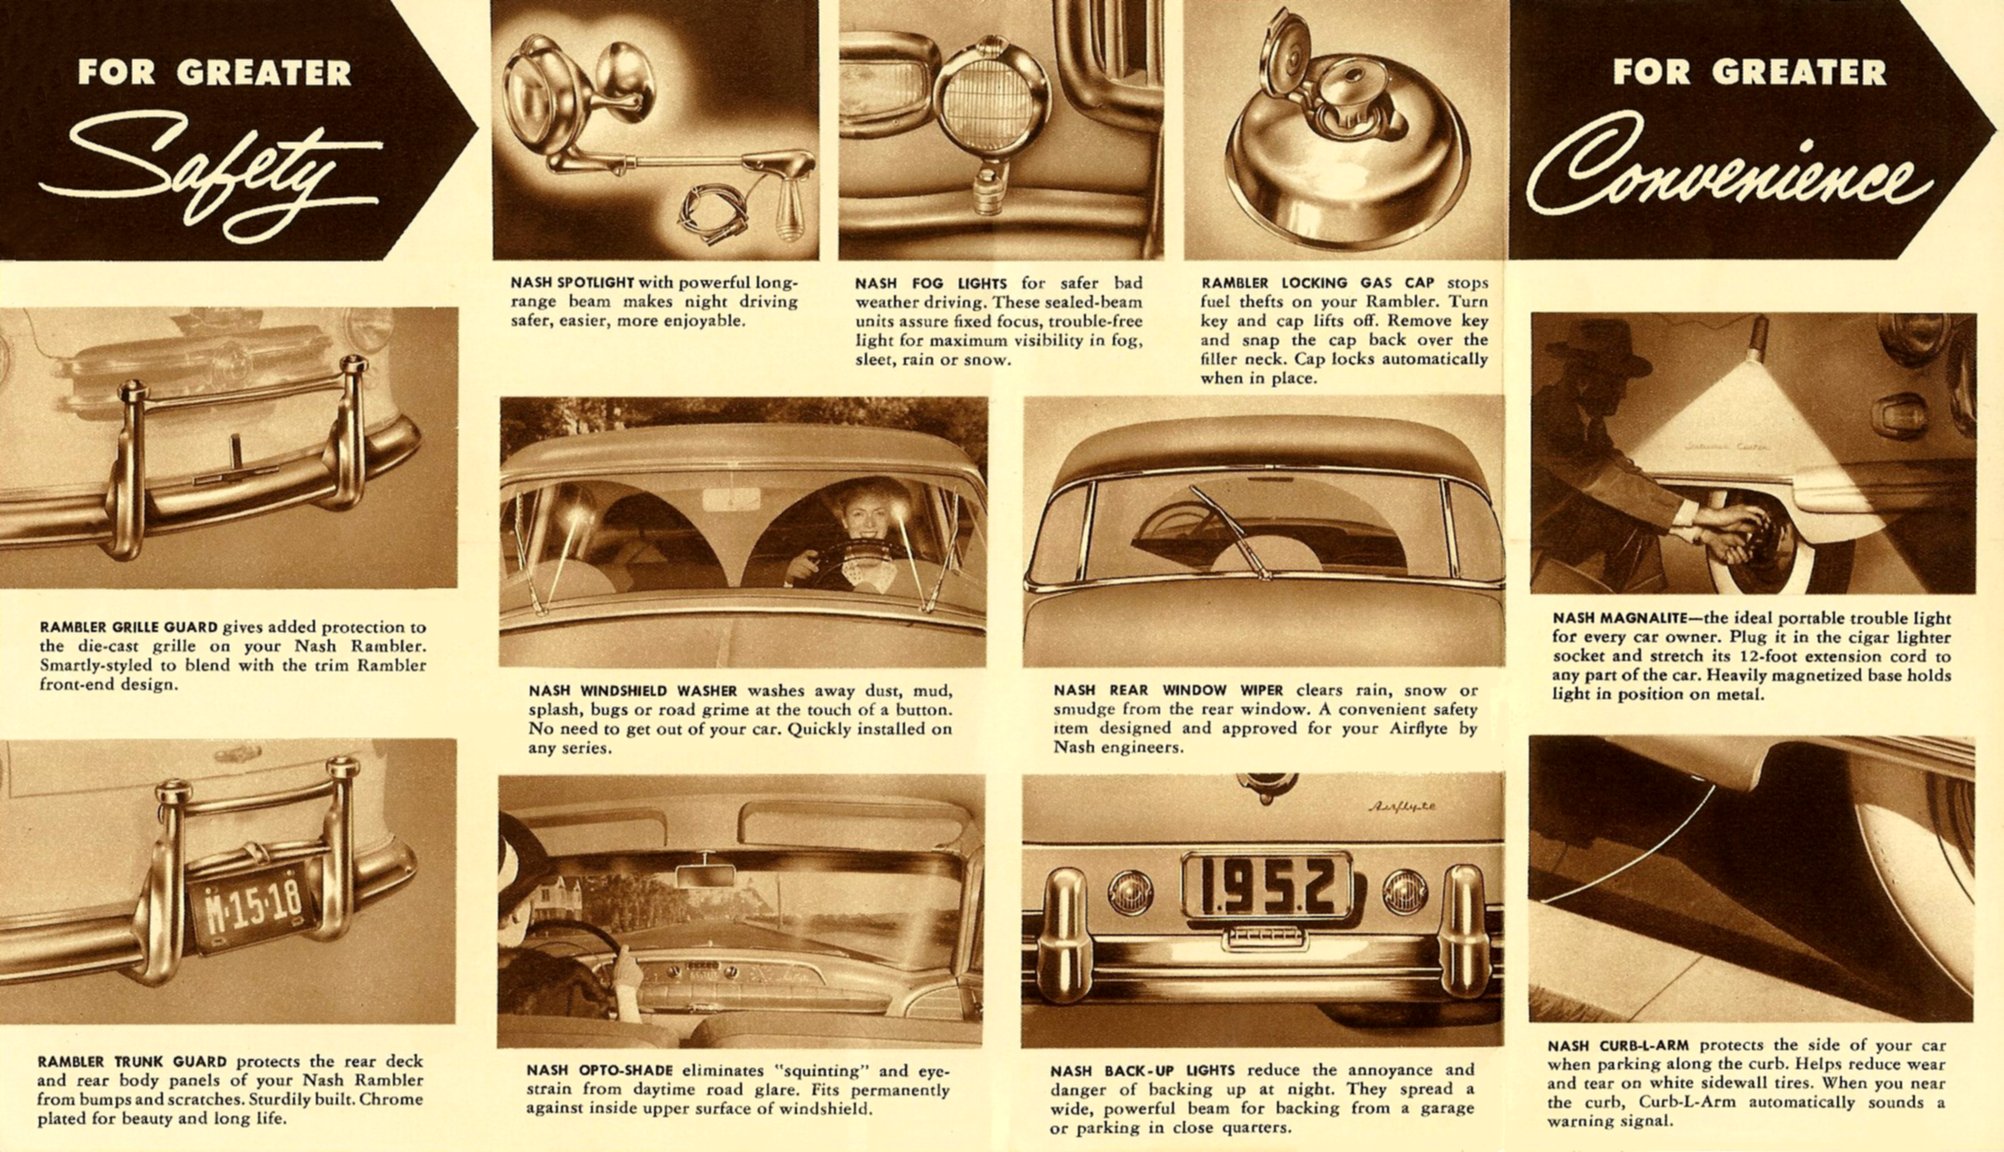 1952 Nash Accessories Folder-07-08